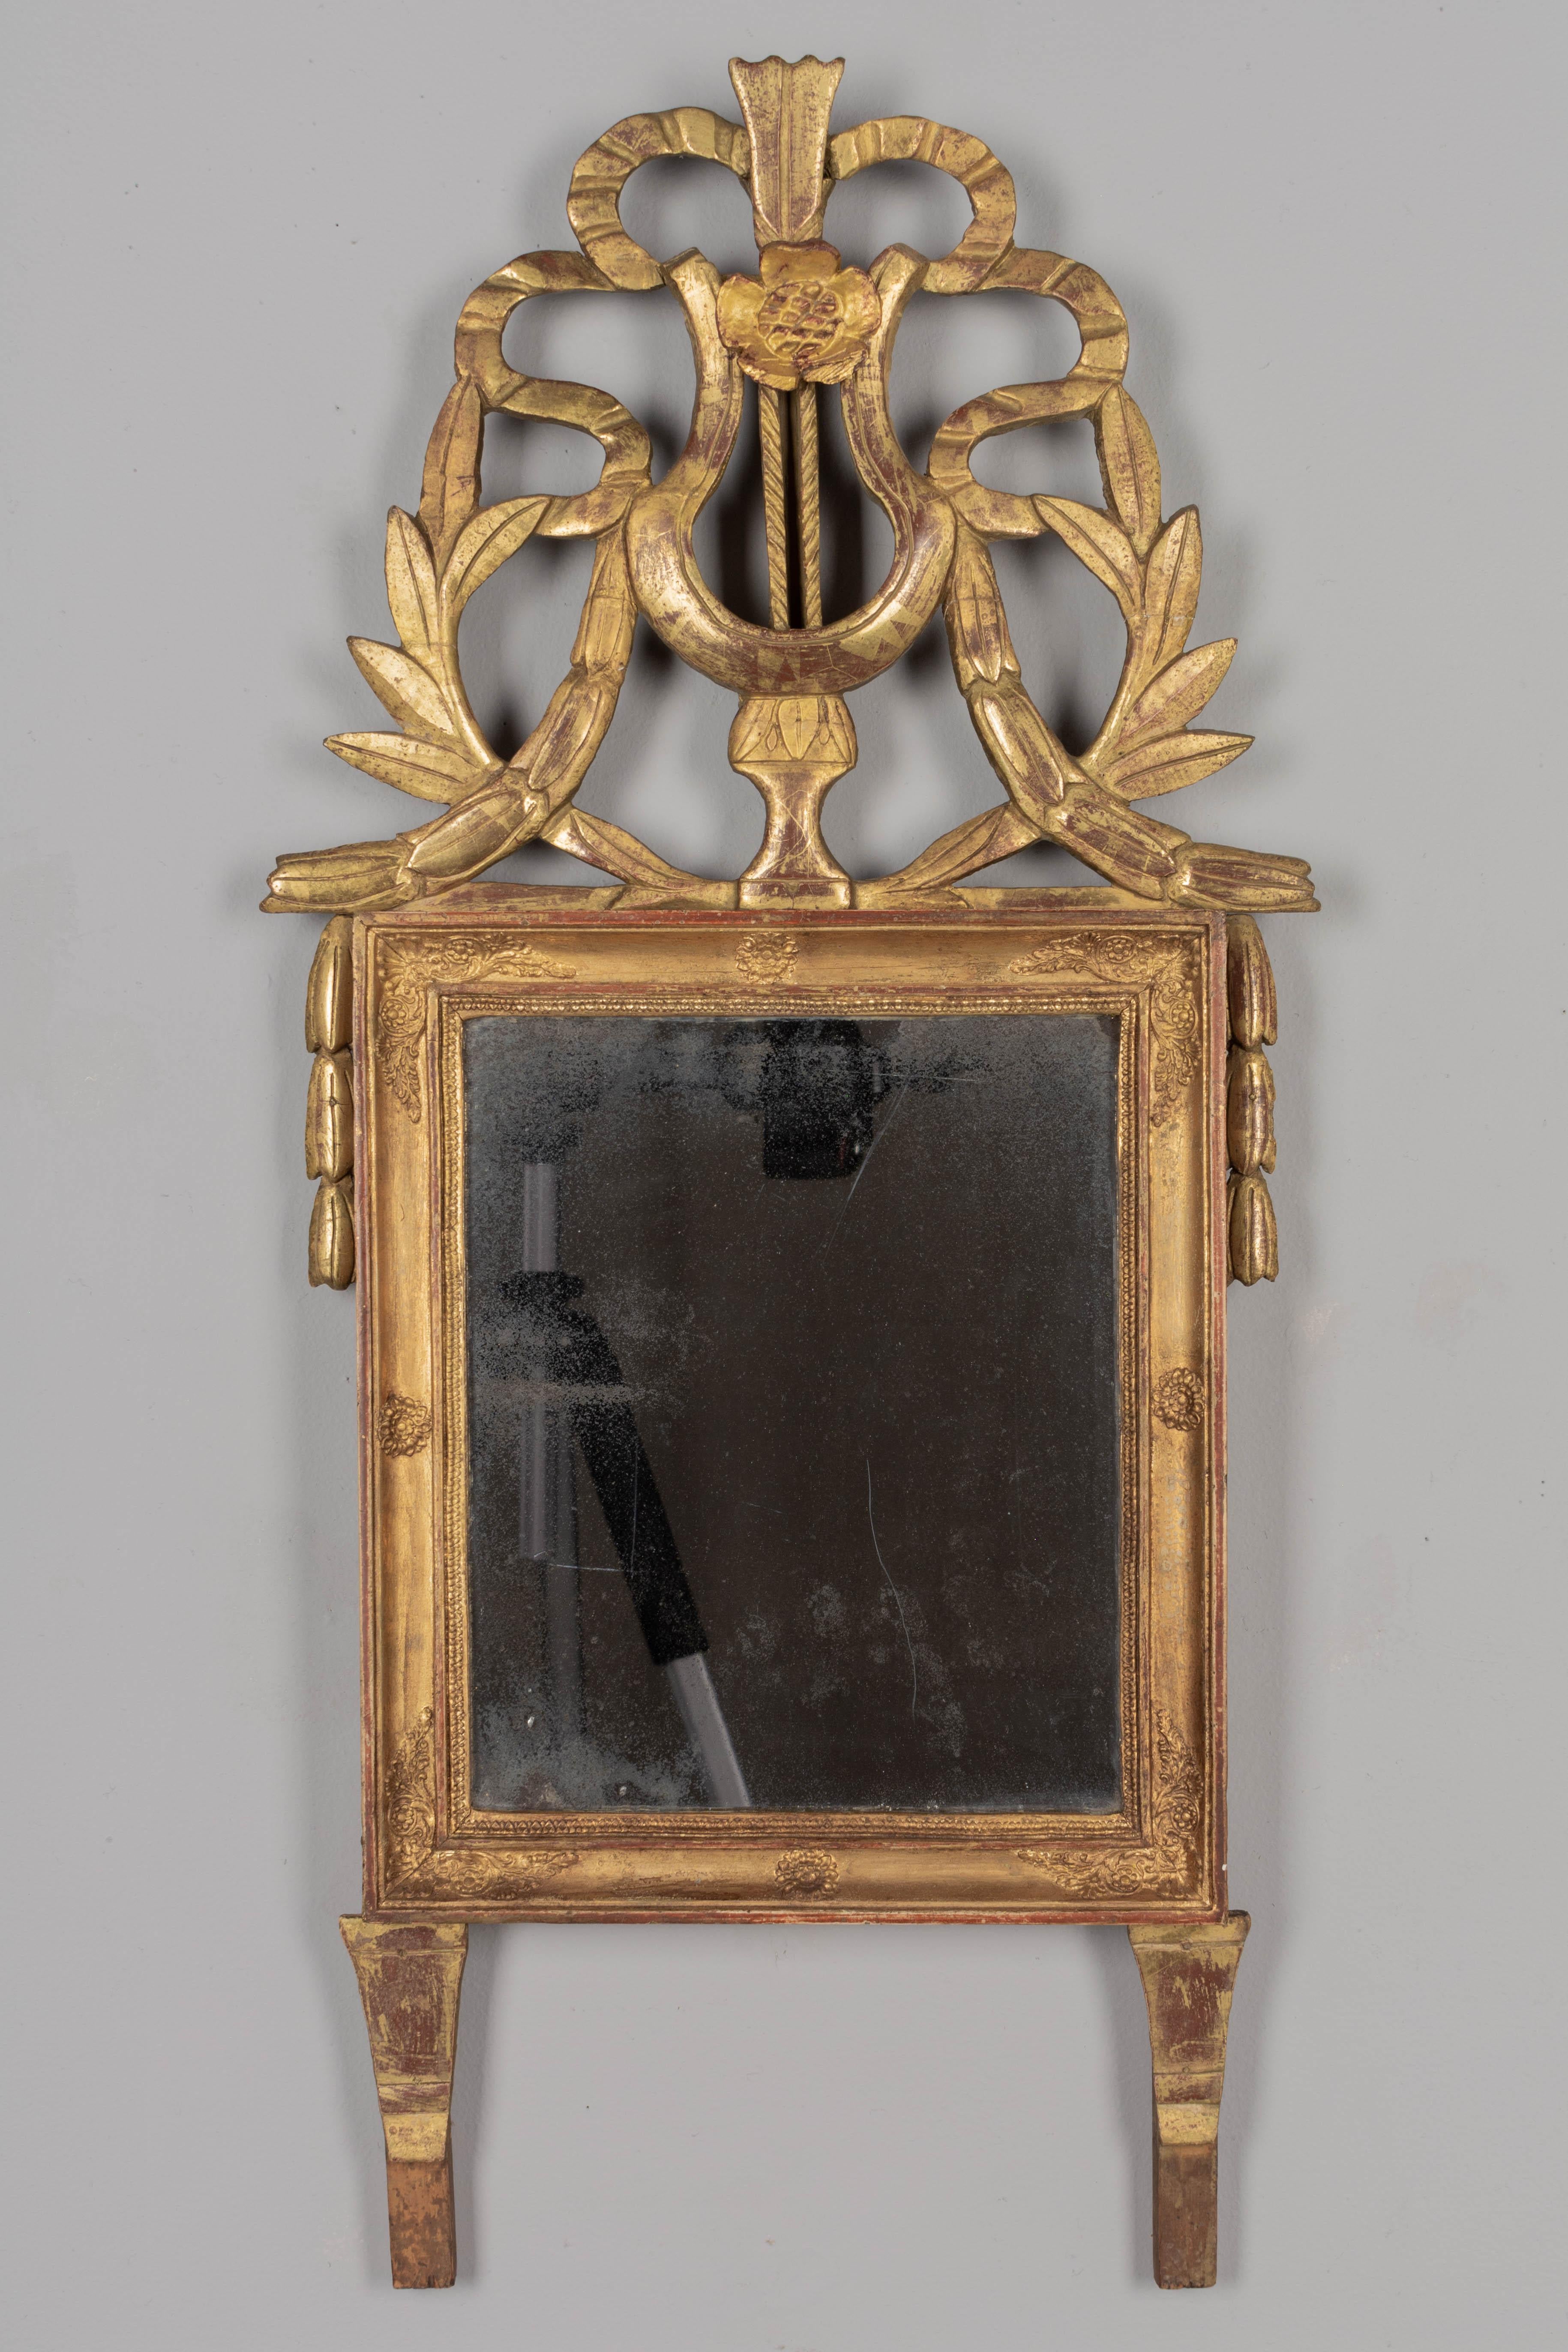 Miroir en bois doré français de style Louis XVI du début du XIXe siècle. Grand cimier sculpté en forme de lyre avec rubans et feuilles de laurier. Tout est d'origine avec quelques restaurations sur la crête et des pertes mineures. Patine dorée